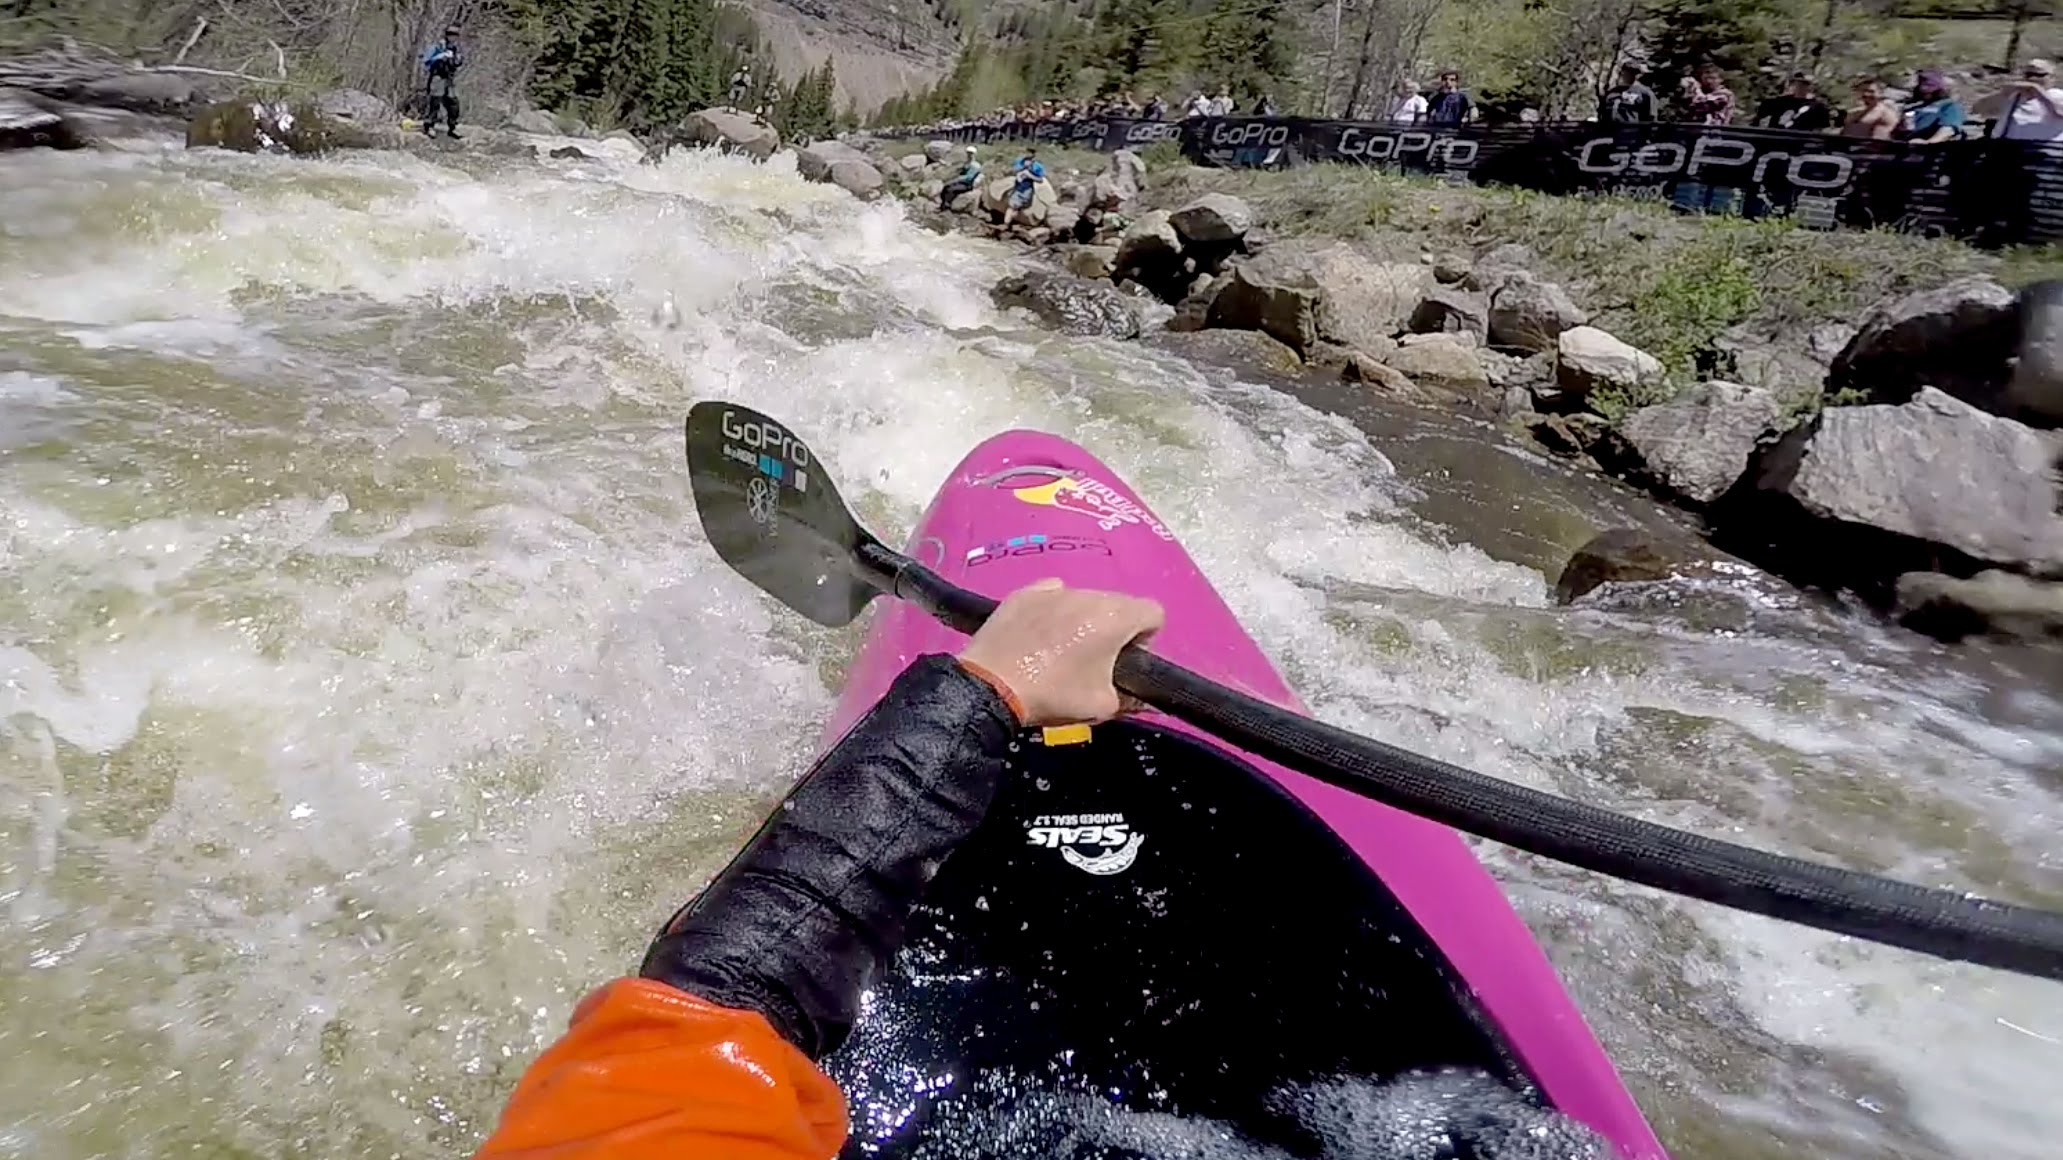 GoPro: Dane Jackson Wins Steep Creek – GoPro Mountain Games 2015 ...